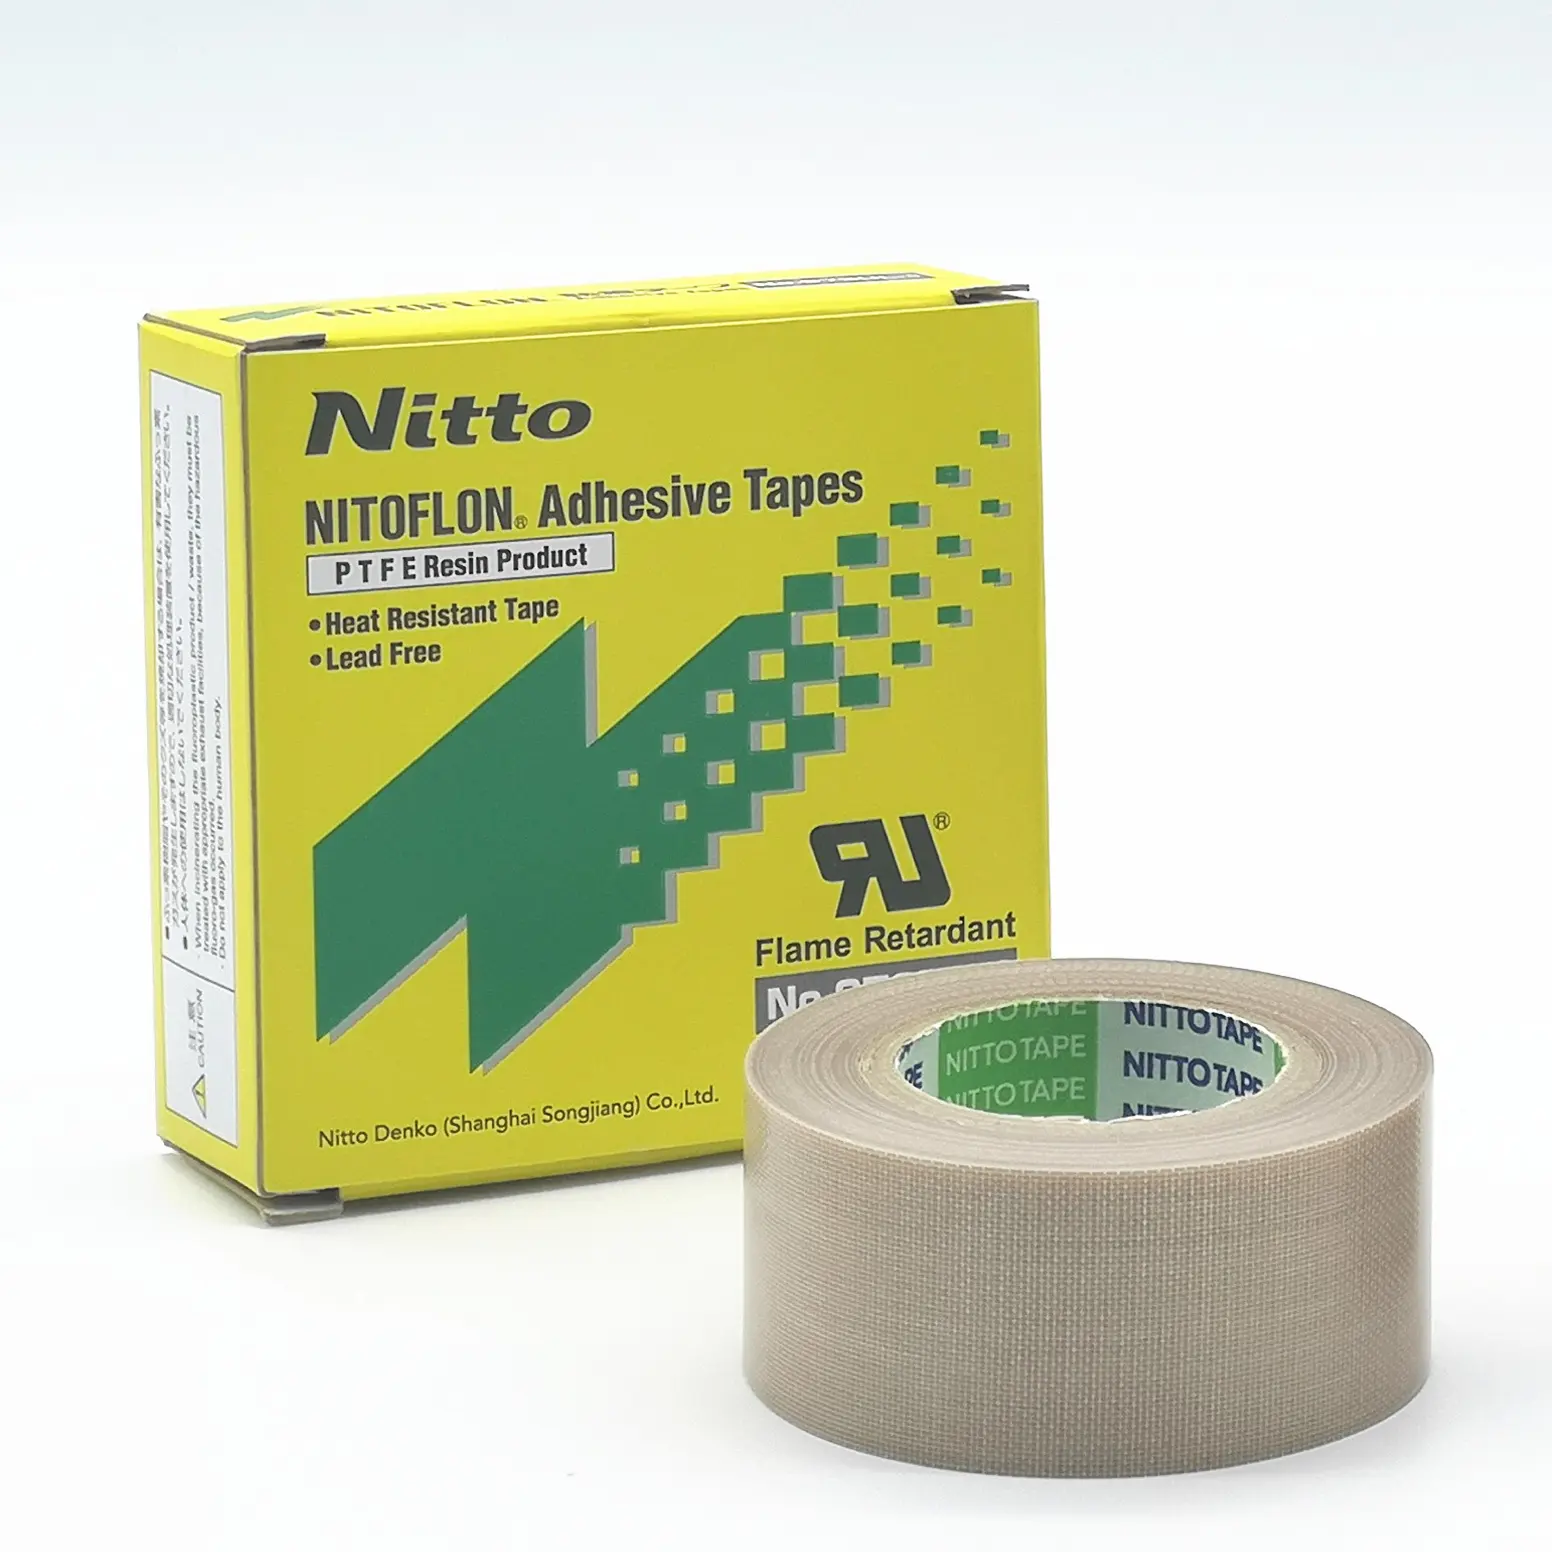 Nitto 973UL Nitto 903 PTFE fiberglas bant Film bant sızdırmazlık için